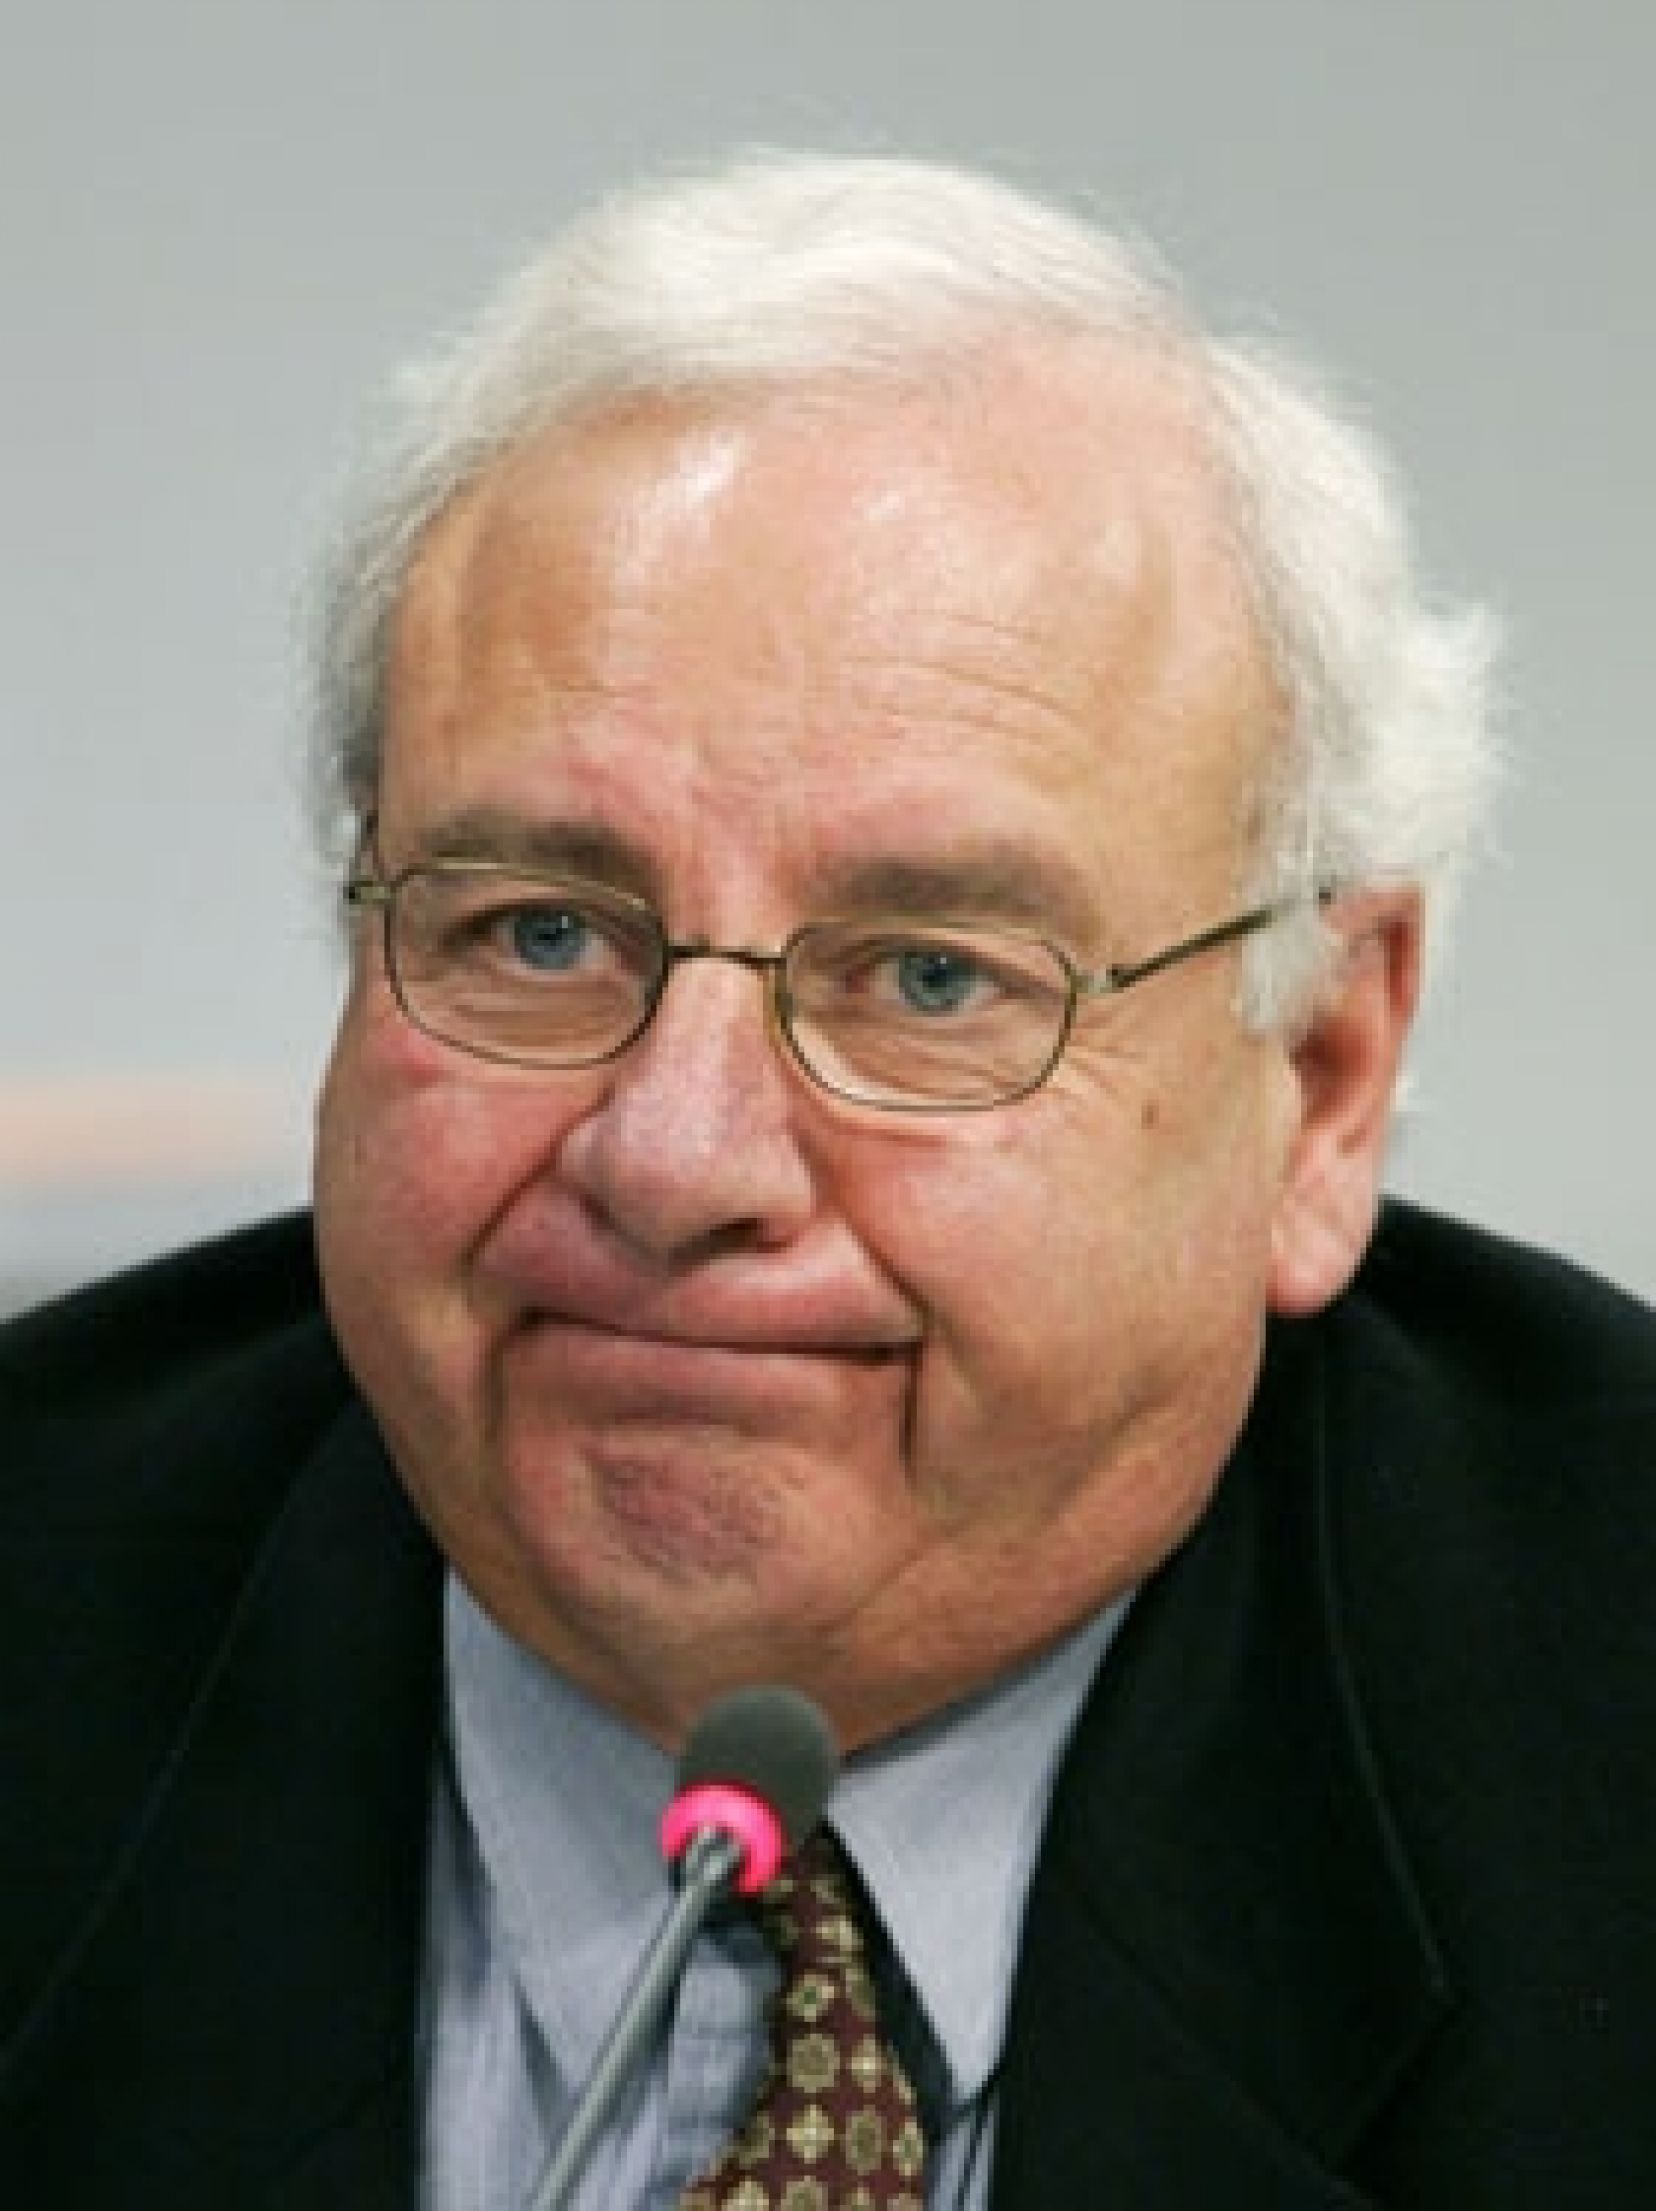 27 juin 2007  Jean Lafleur est condamné pour son rôle dans le scandale des commandites